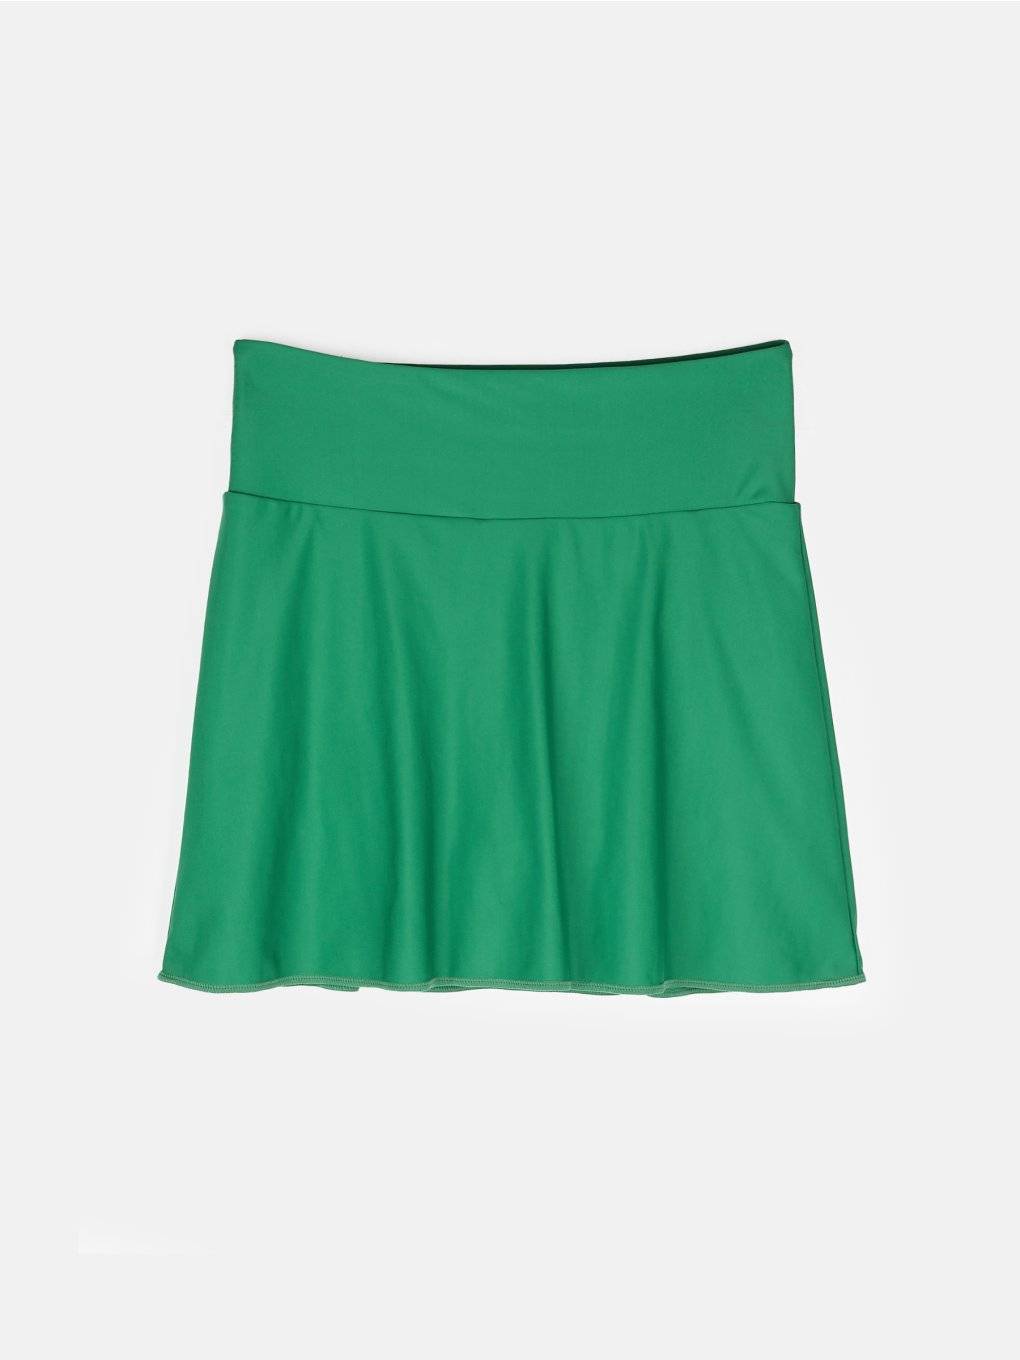 Sport skirt with inner shorts